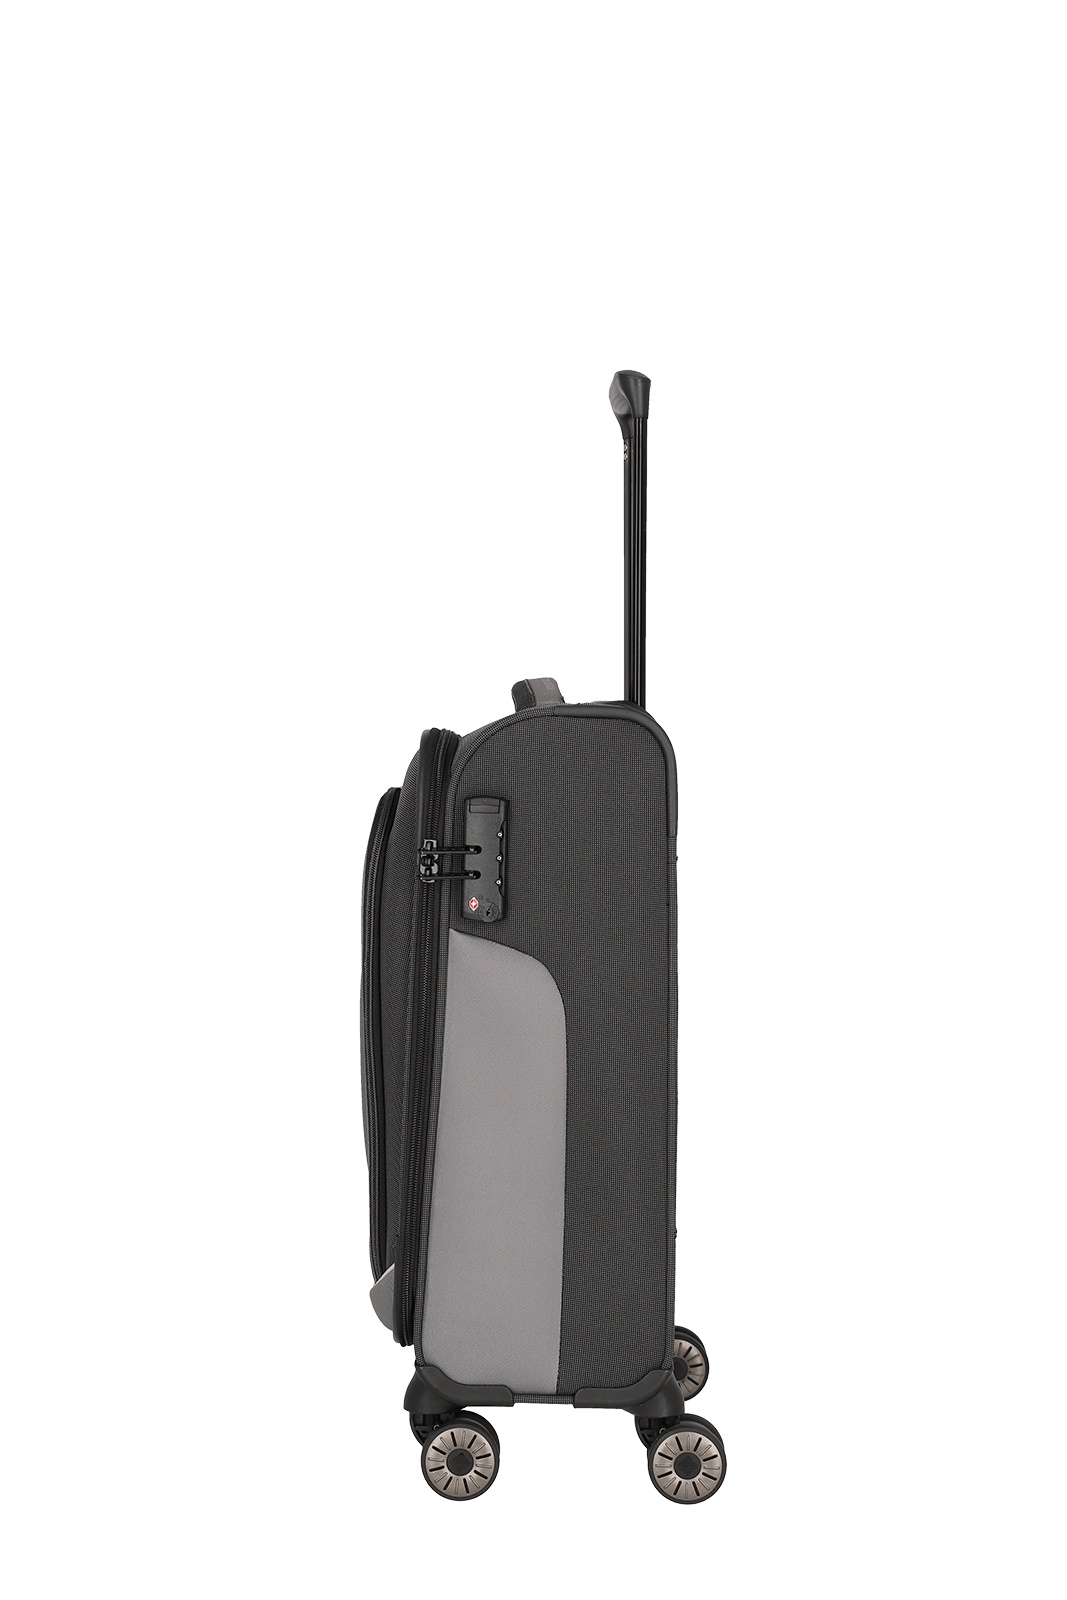 VIIA Reisetrolley Size S 55cm Weichgepäck Kabine schwarz